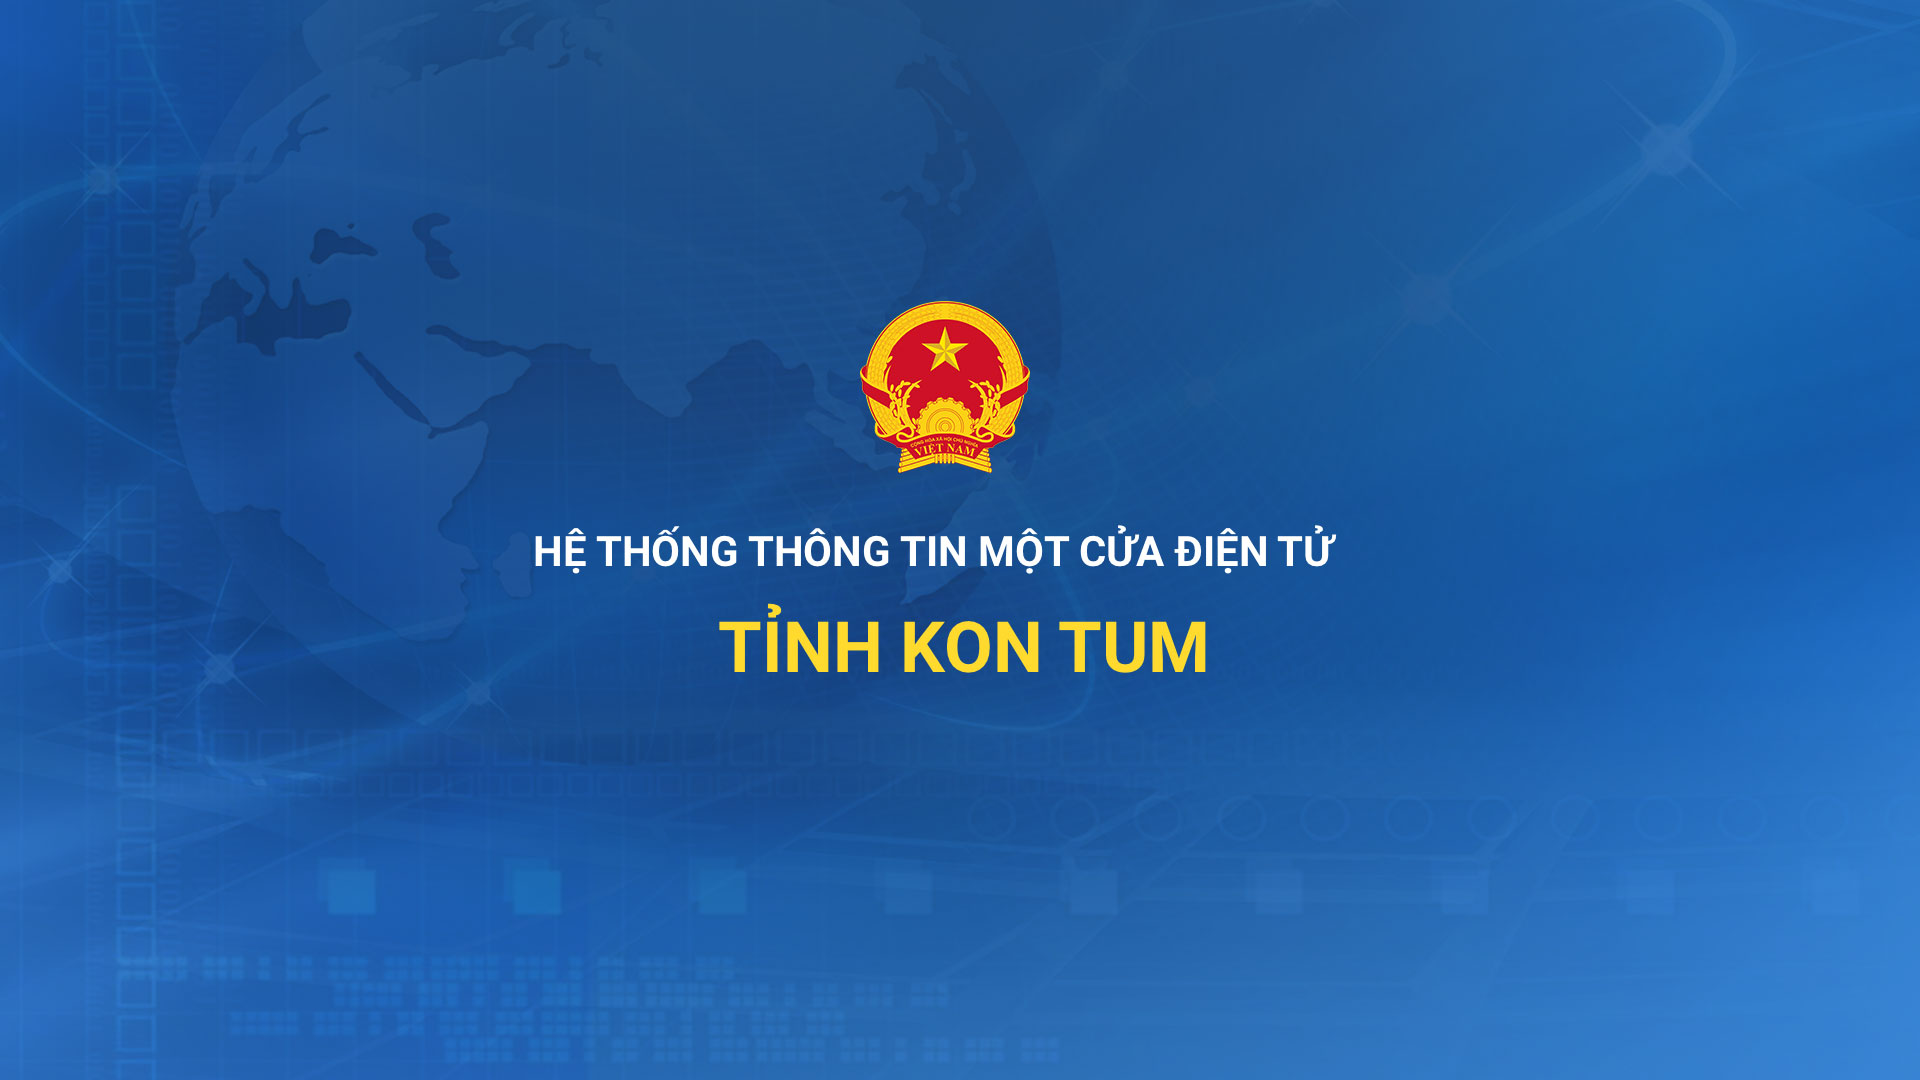 UBND tỉnh Kon Tum ban hành văn bản chỉ đạo thực hiện giải quyết thủ tục hành chính trên Hệ thống thông tin một cửa điện tử của tỉnh và cung cấp dịch vụ công trực tuyến